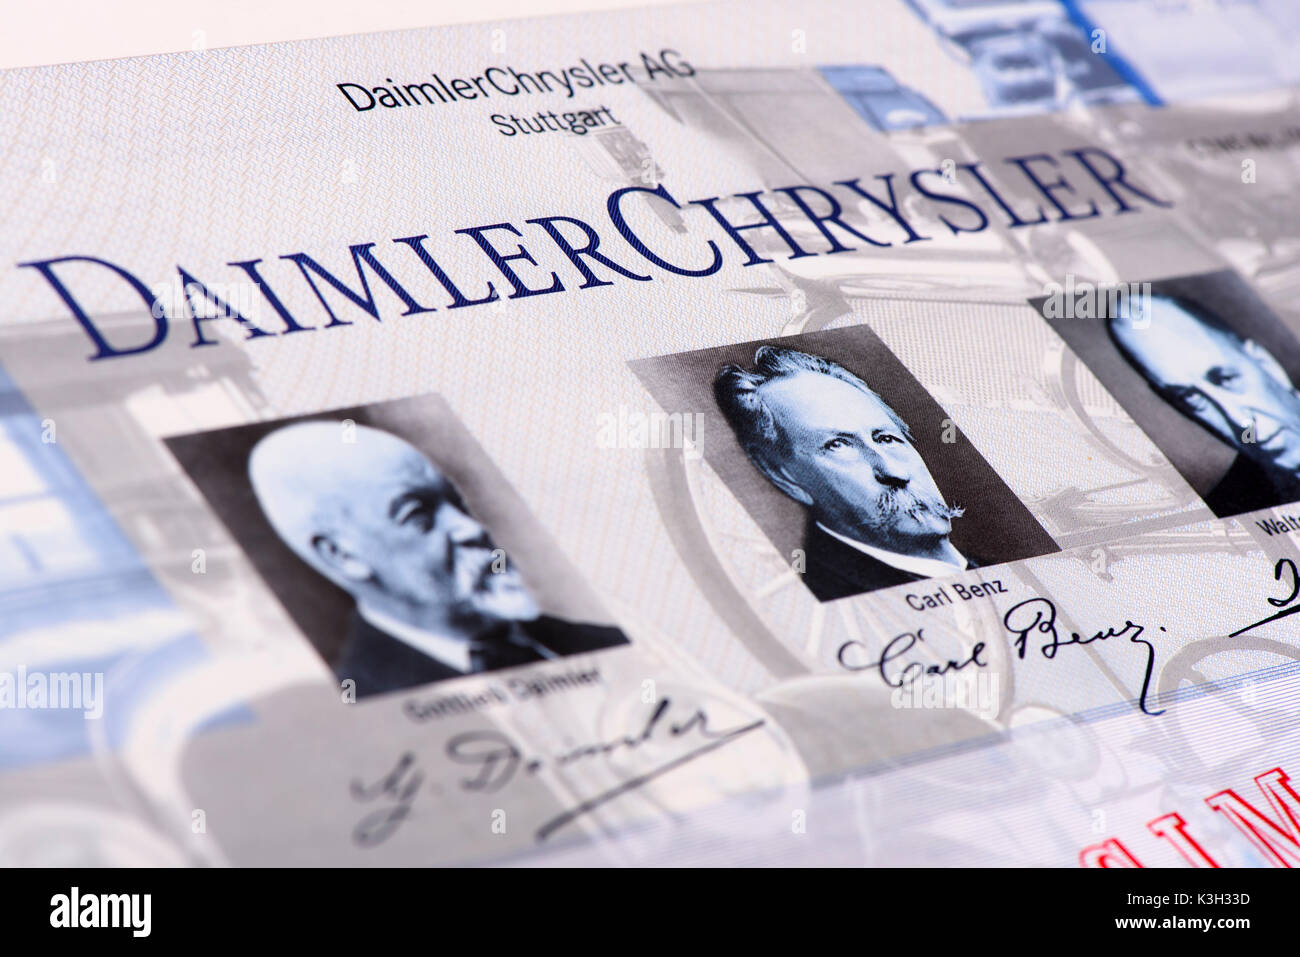 Magazzino della società DaimlerChrysler Foto Stock